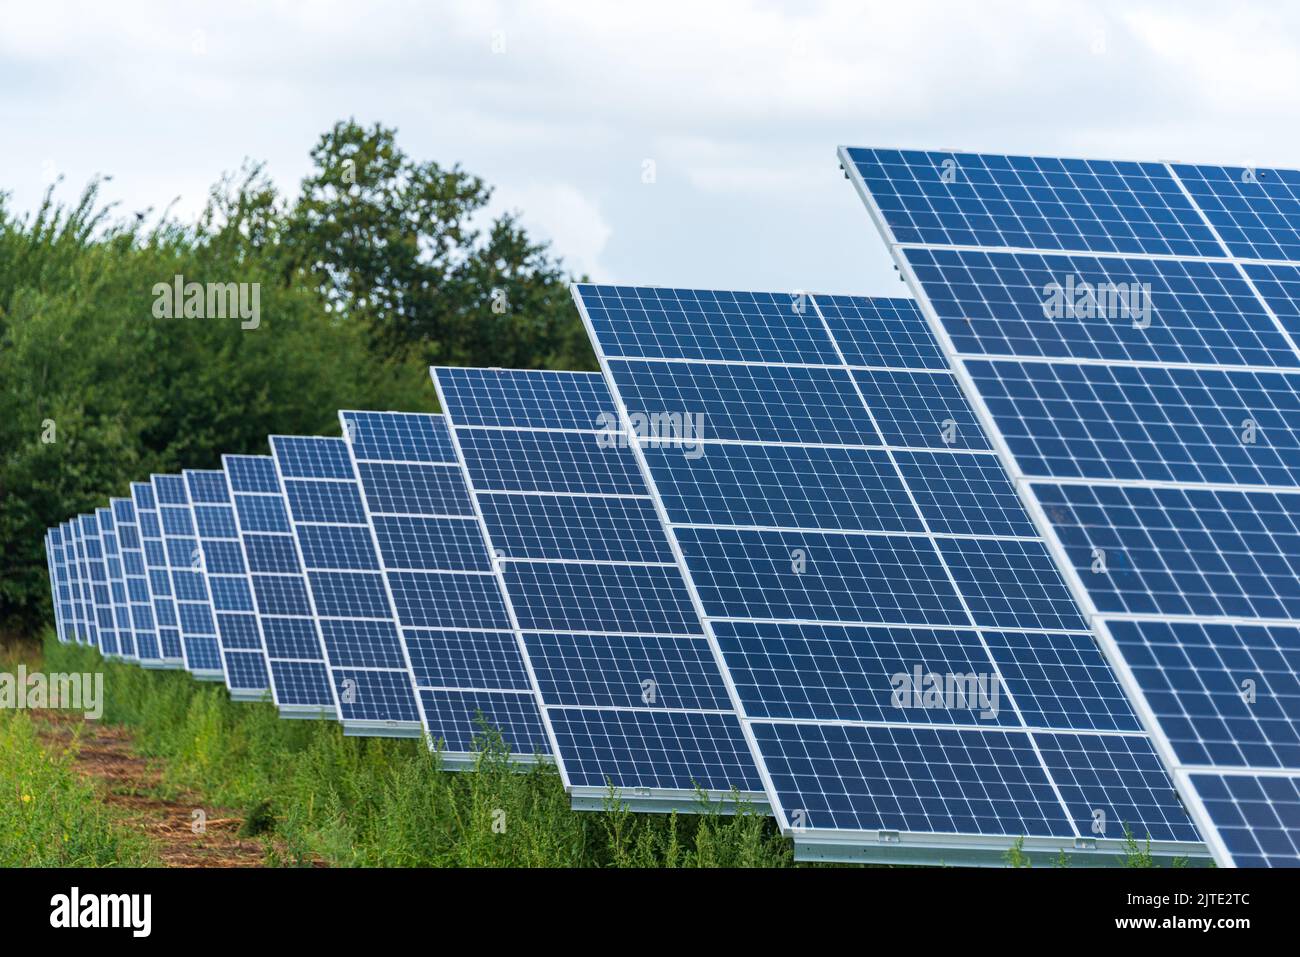 Fotovoltaikanlage zur Erzeugung von Grünem Strom auf einem Feld in Schleswig-Holstein Foto de stock